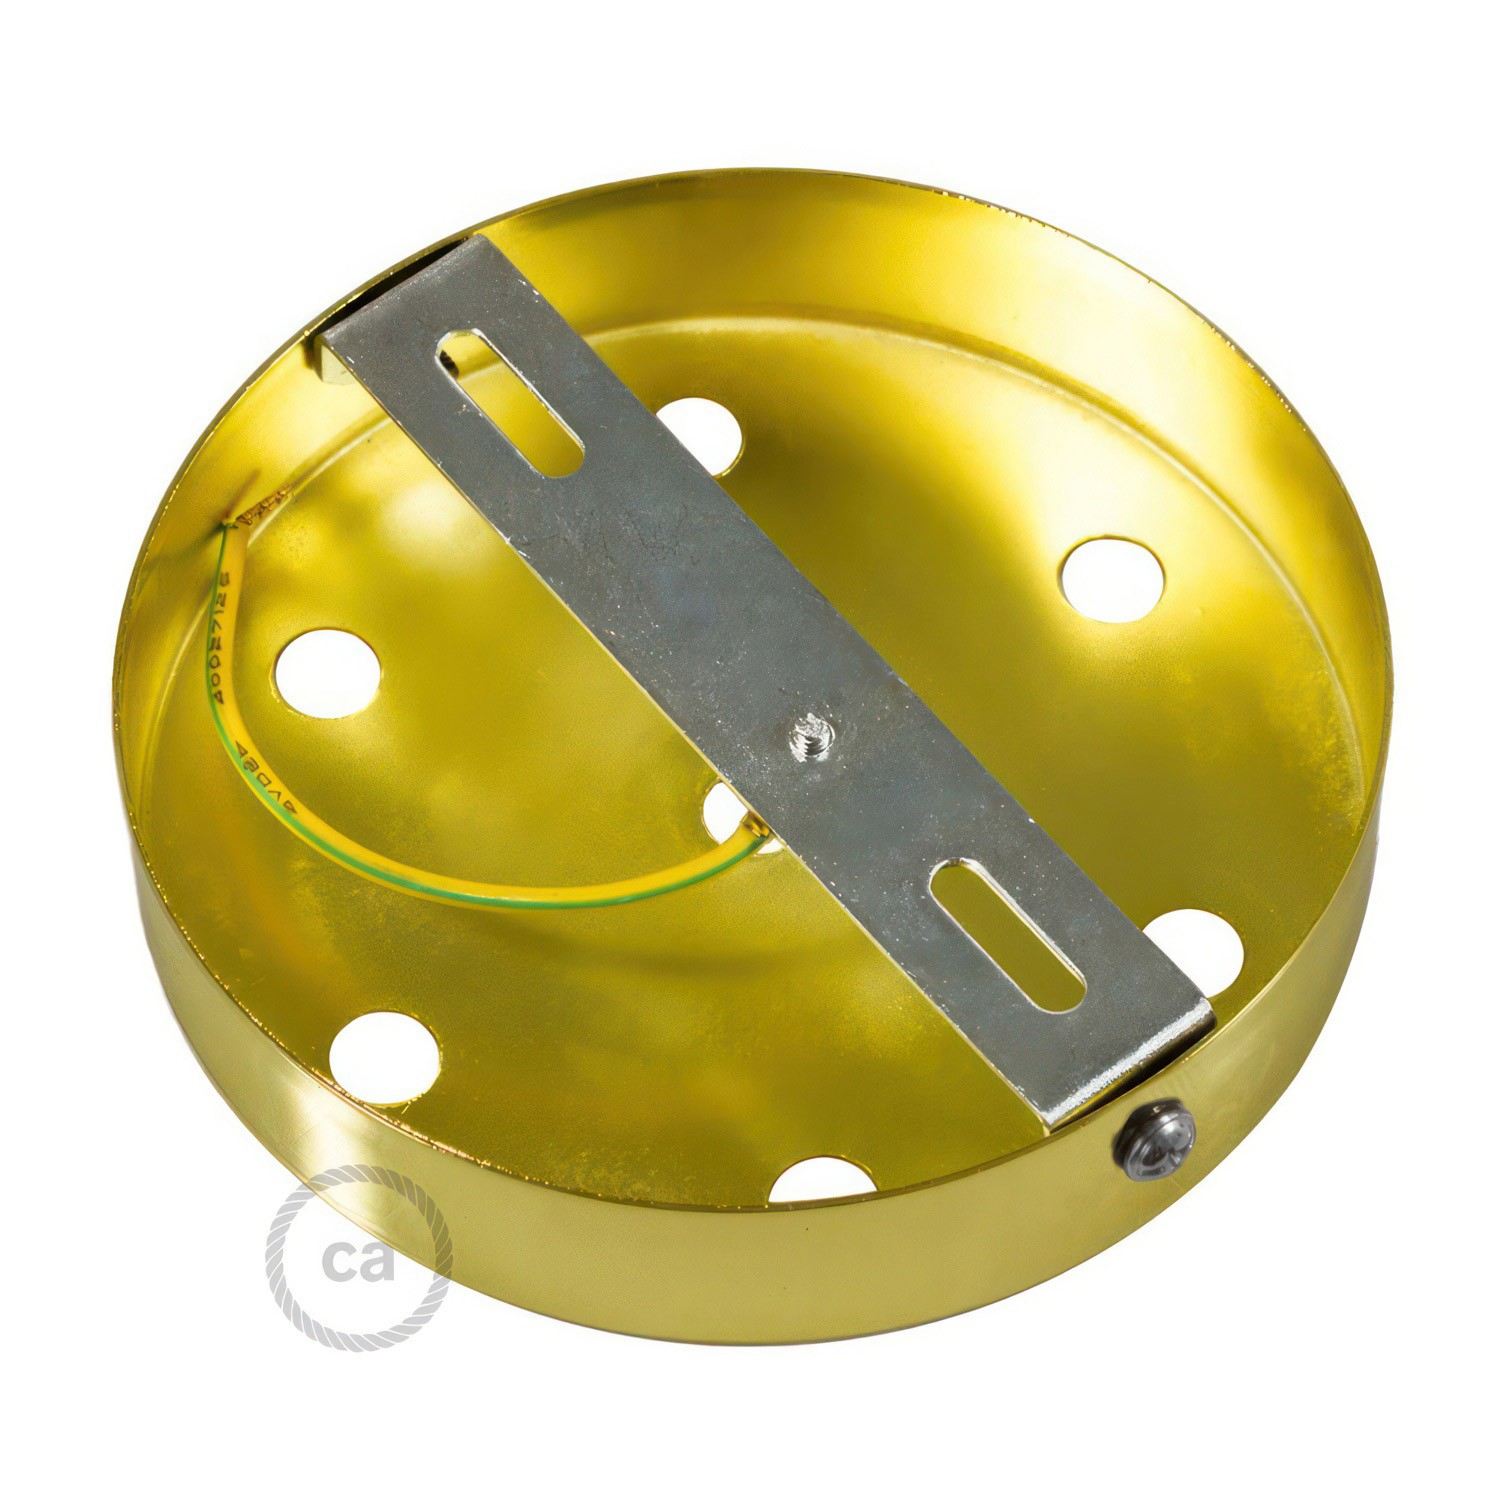 Zylindrischer 7-Loch-Lampenbaldachin Kit aus Metall